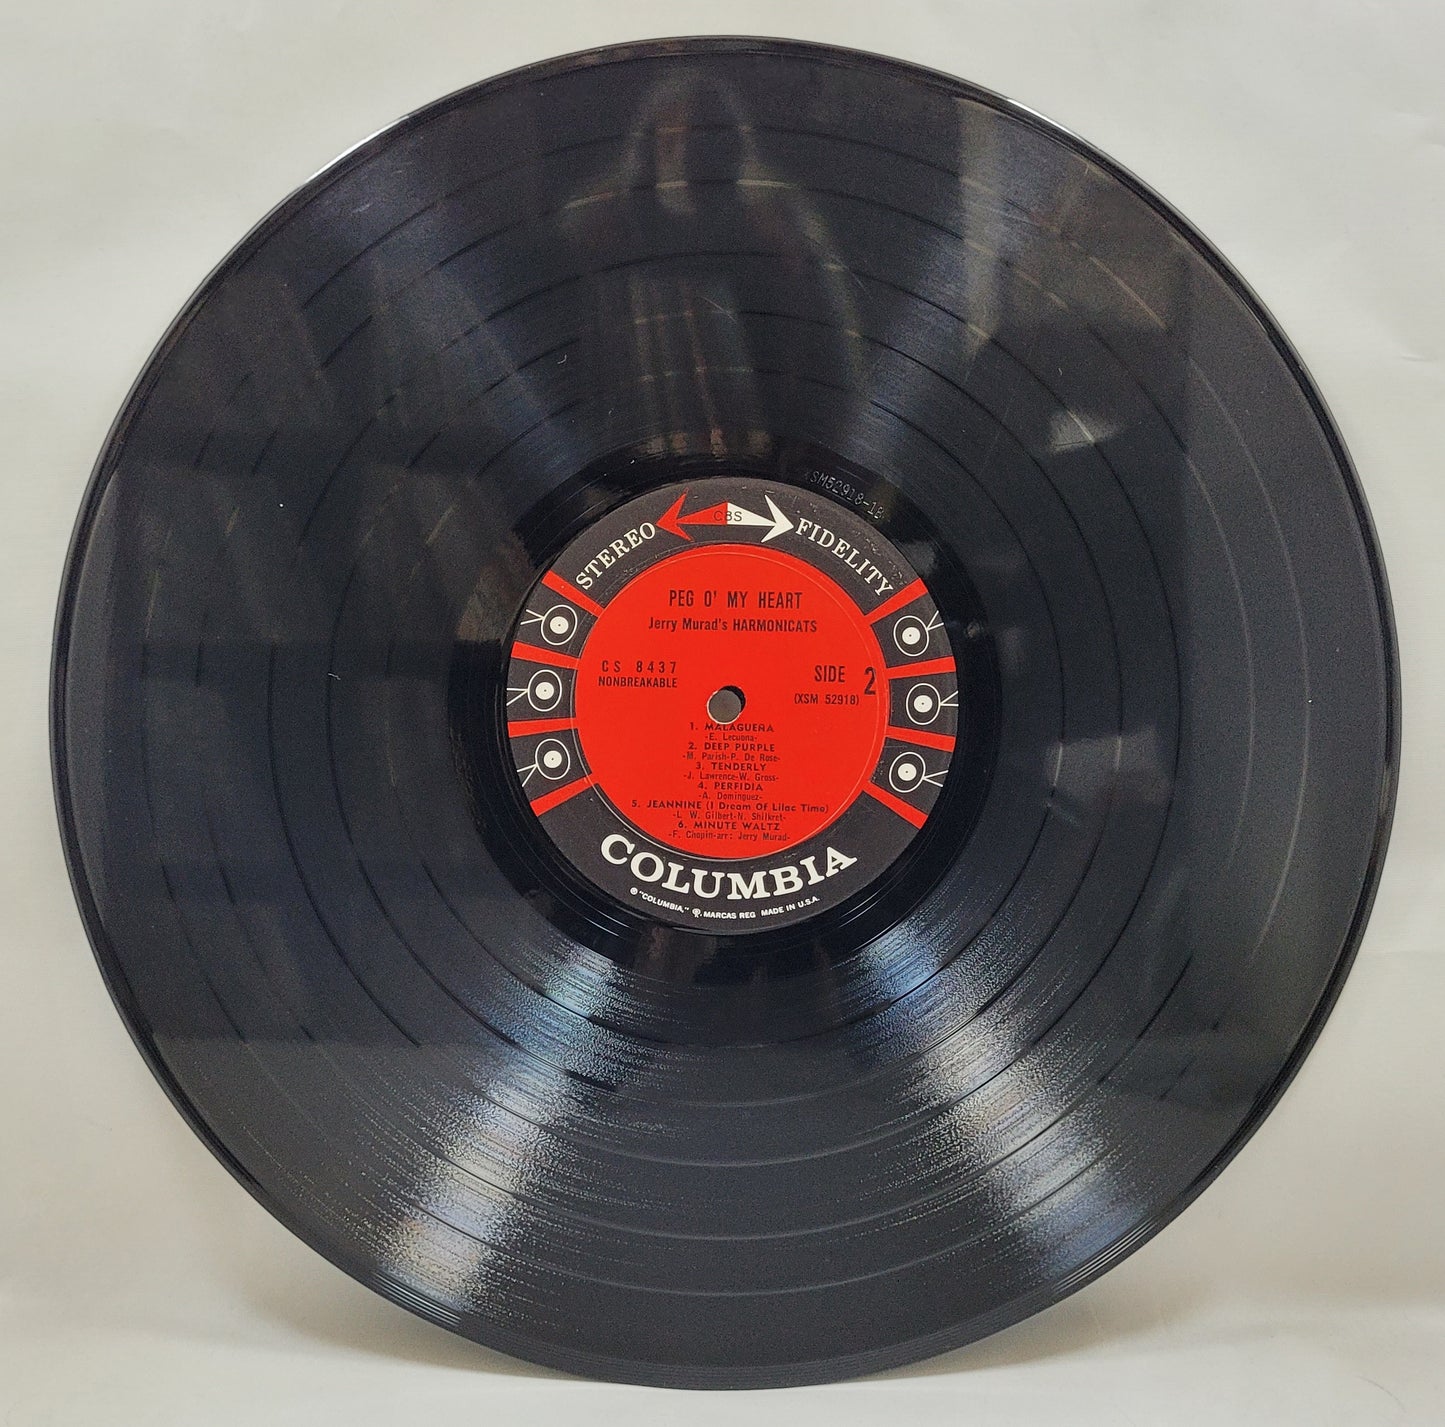 Jerry Murad's Harmonicats - Peg O' My Heart [1961 Used Vinyl Record LP]